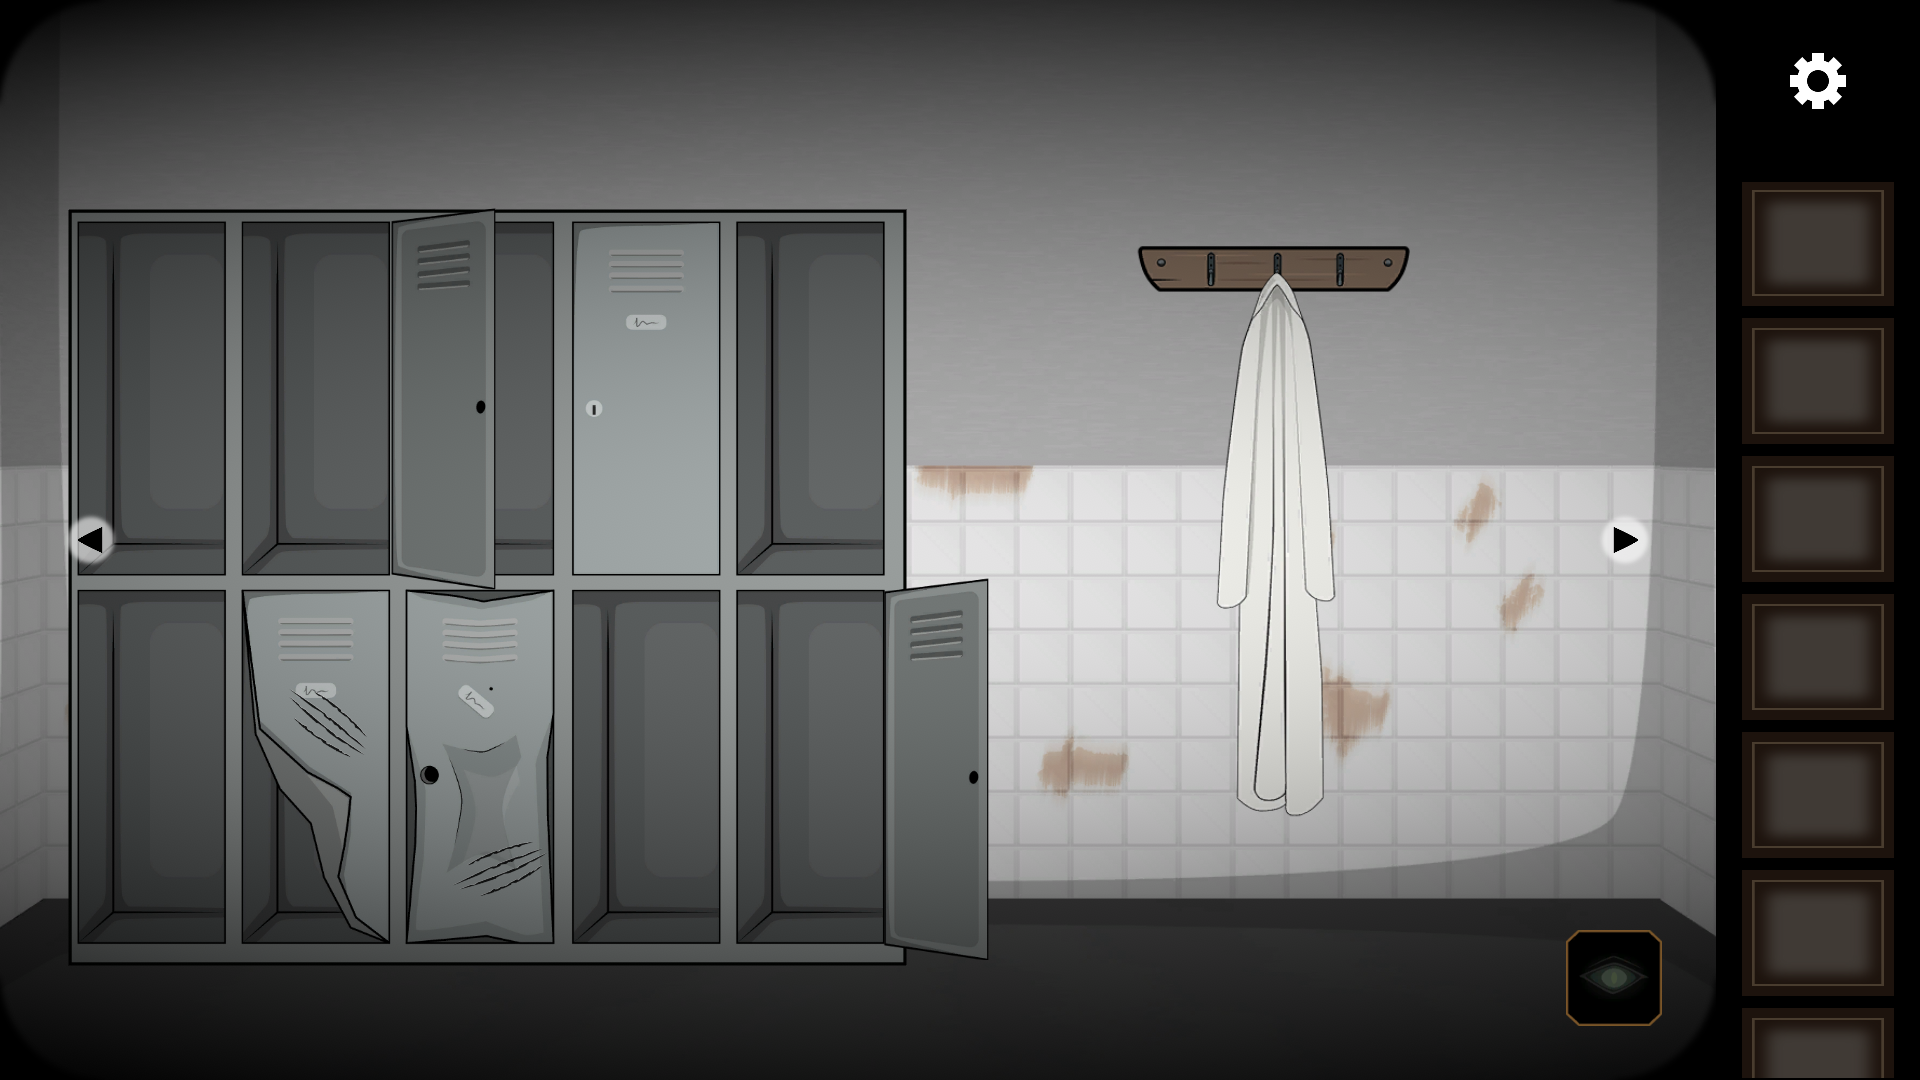 Escape Room: Strange Case screenshot game